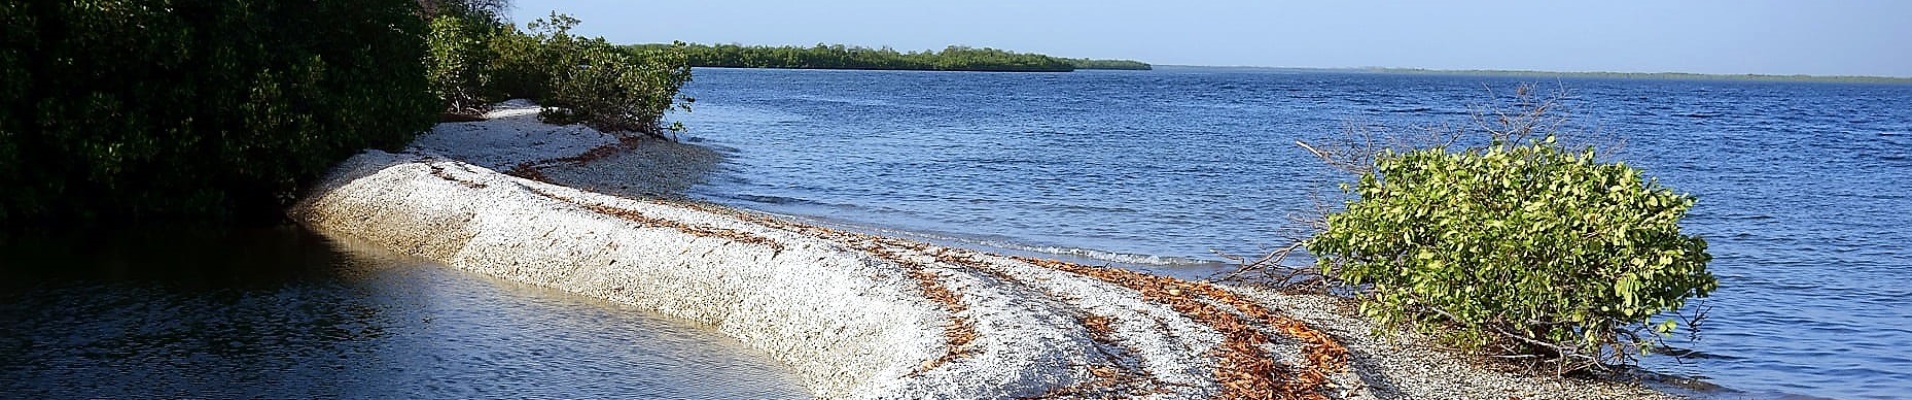 Petite lagune de sable et de coquillages dans le Sine Saloum